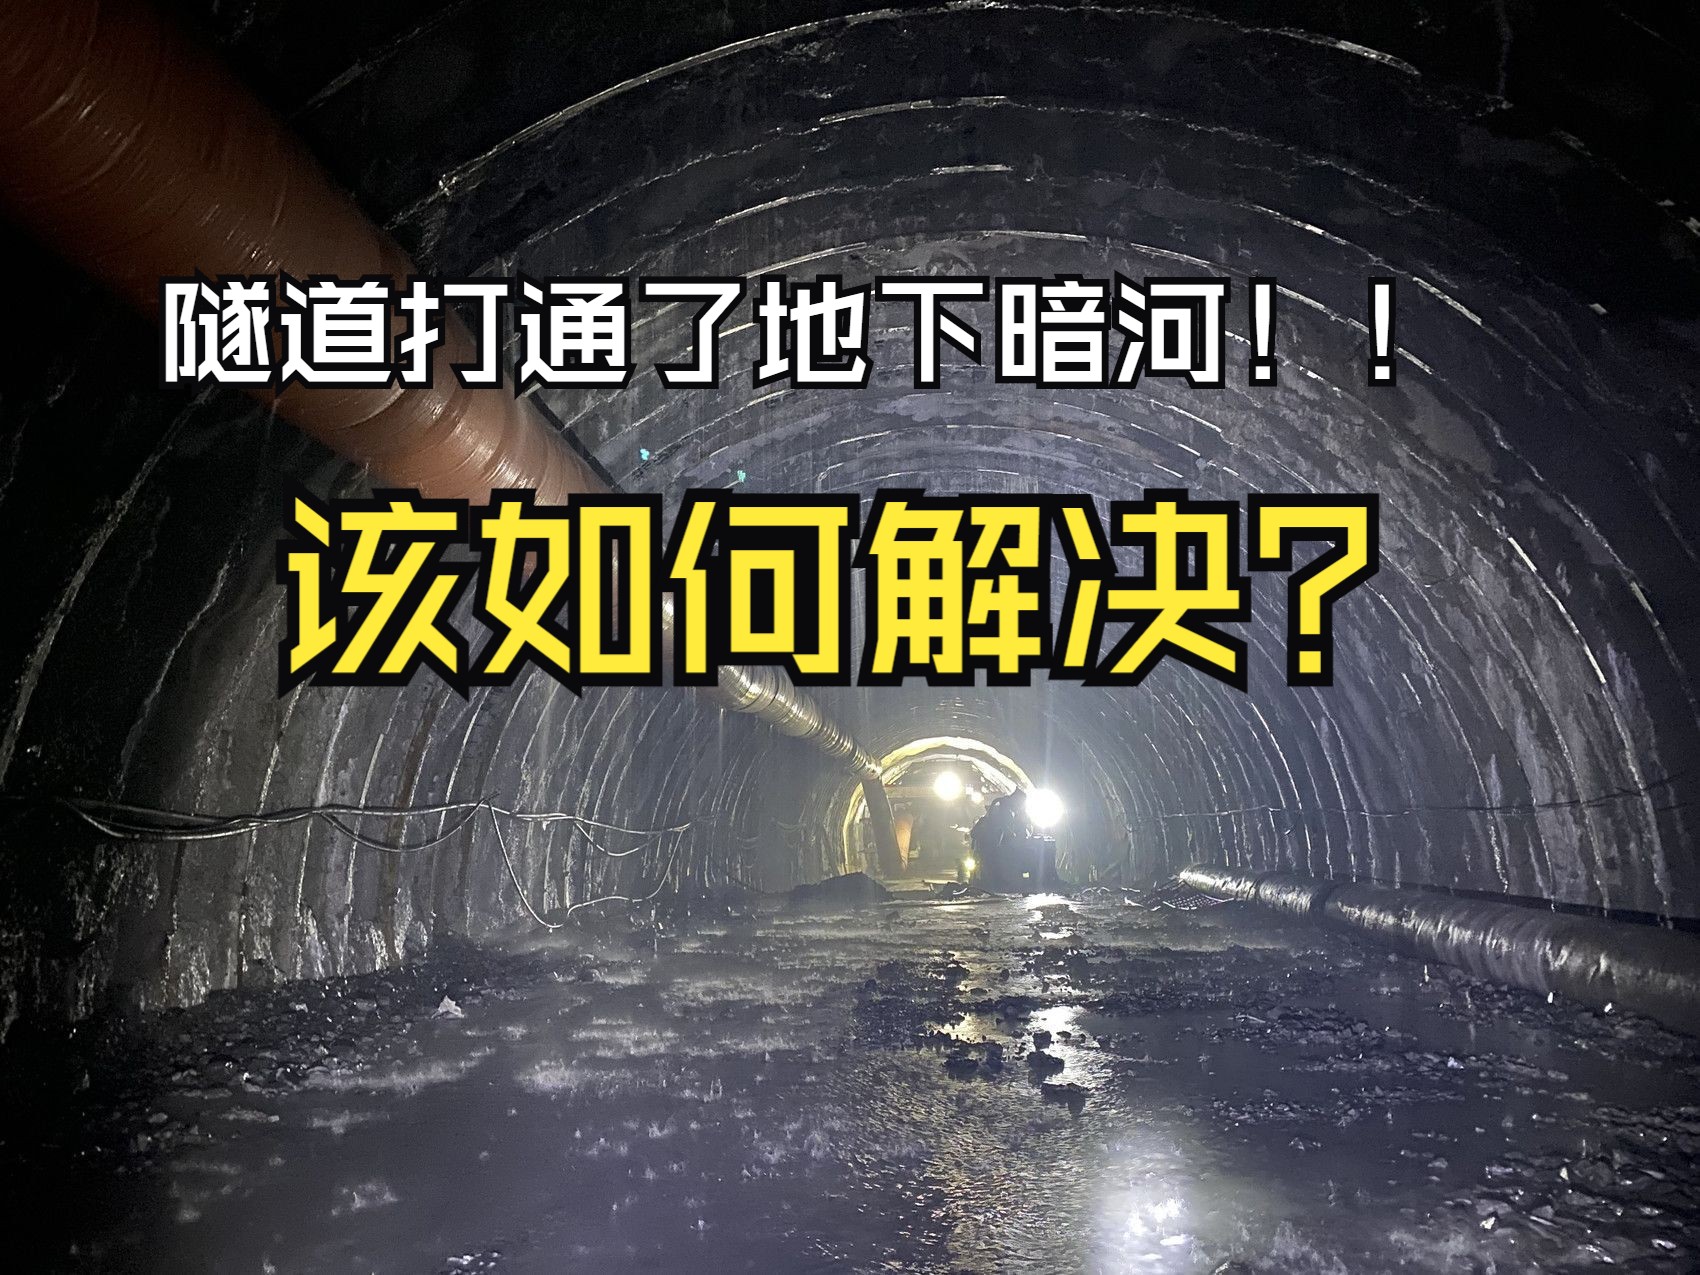 修隧道时竟然把山里的暗河给打透了,该如何解决?